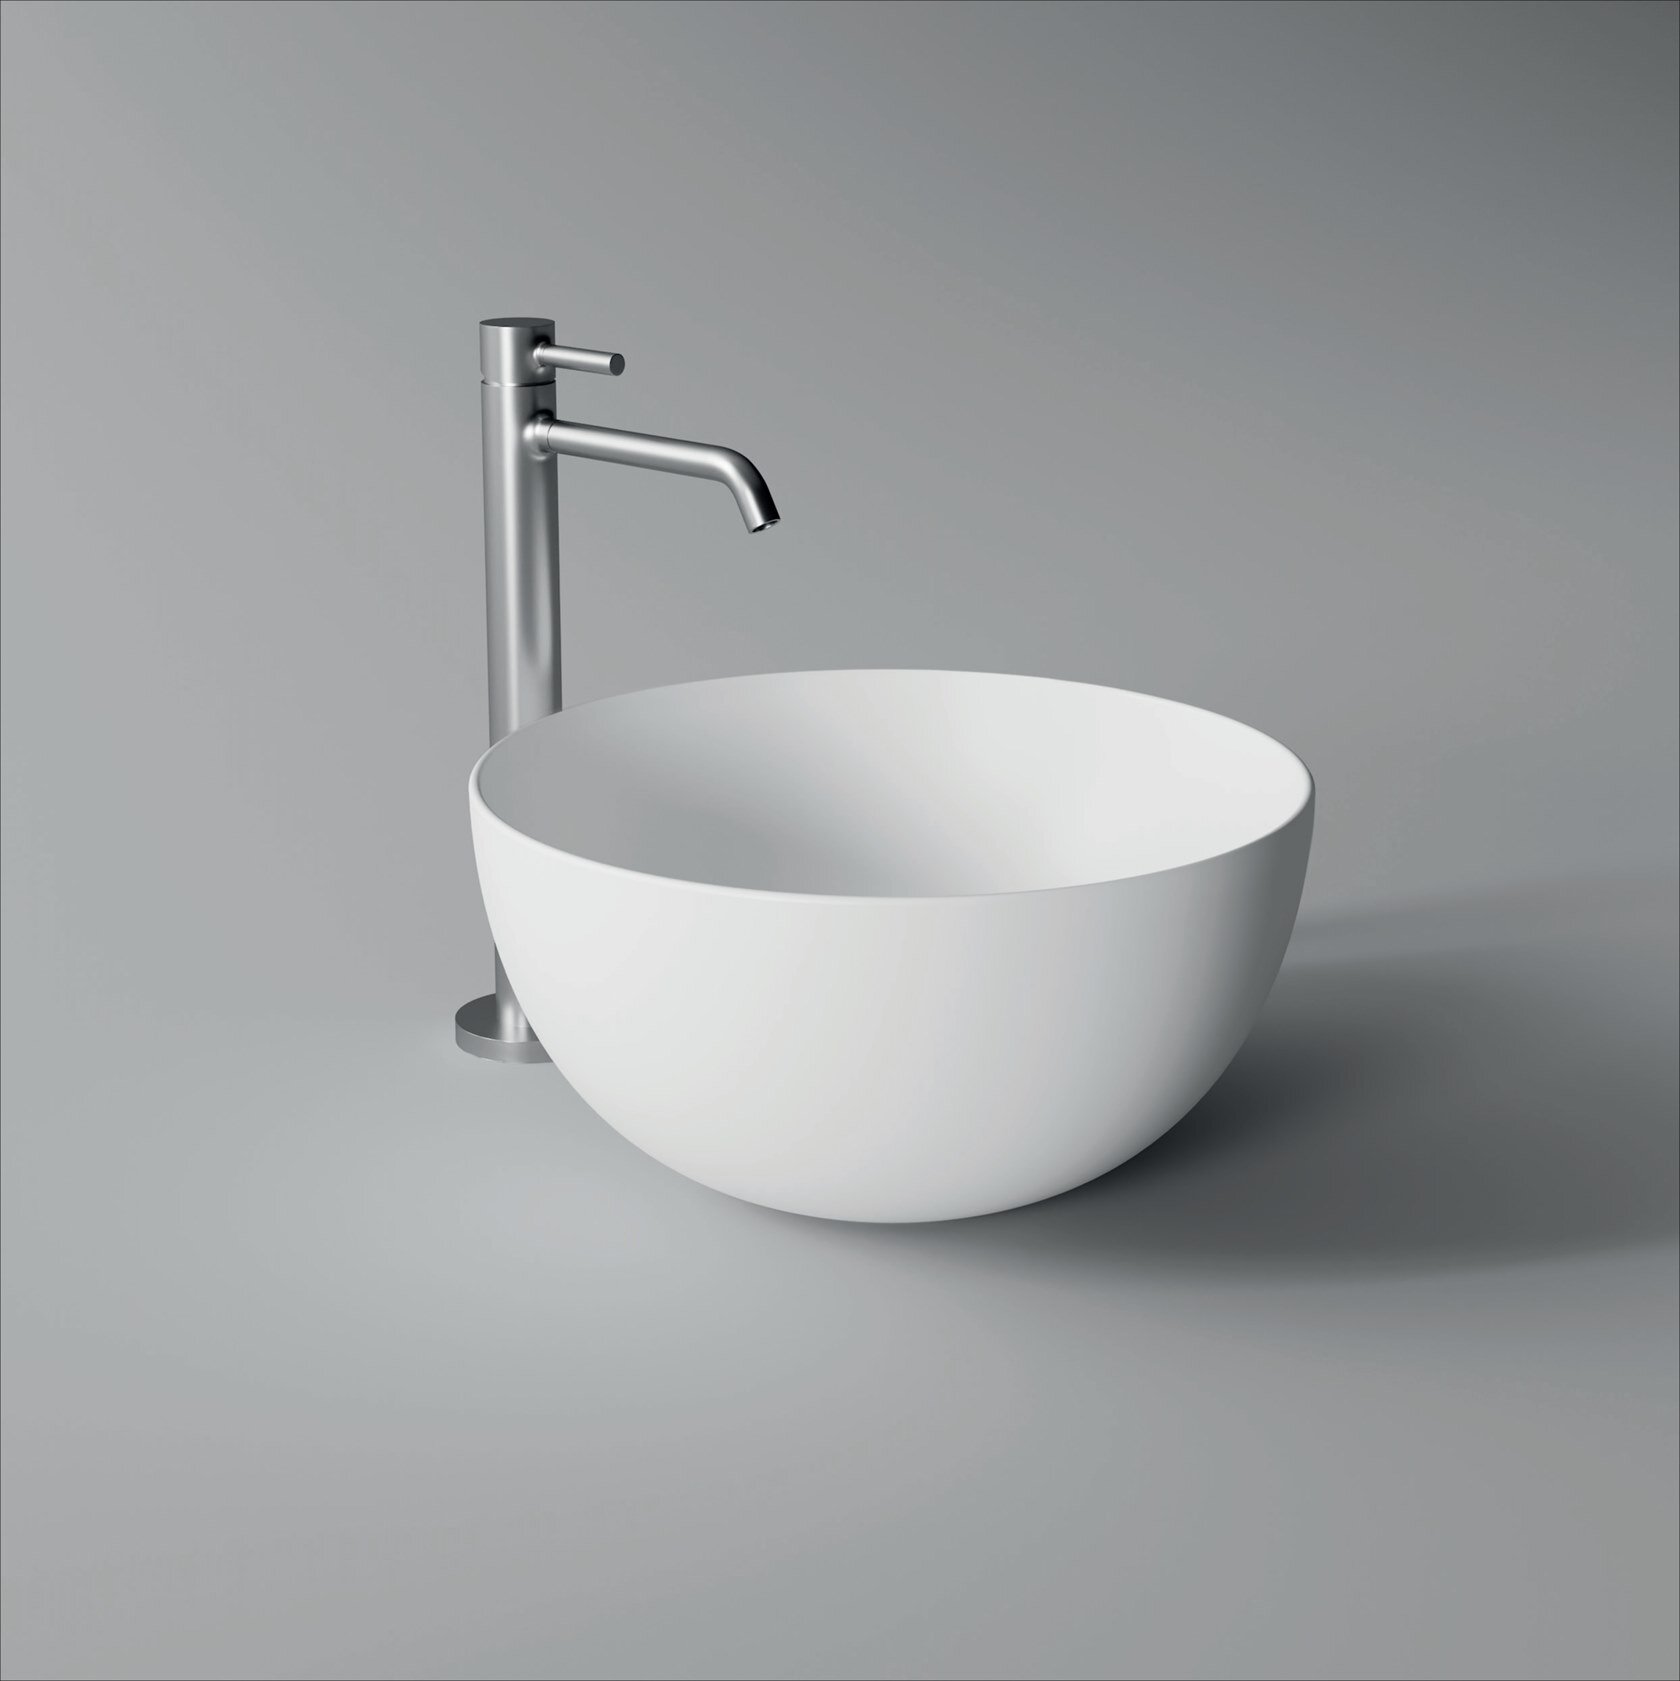 2b_UNICA-Round-washbasin-Alice-Ceramica-365386-rel2b6e1787.jpeg